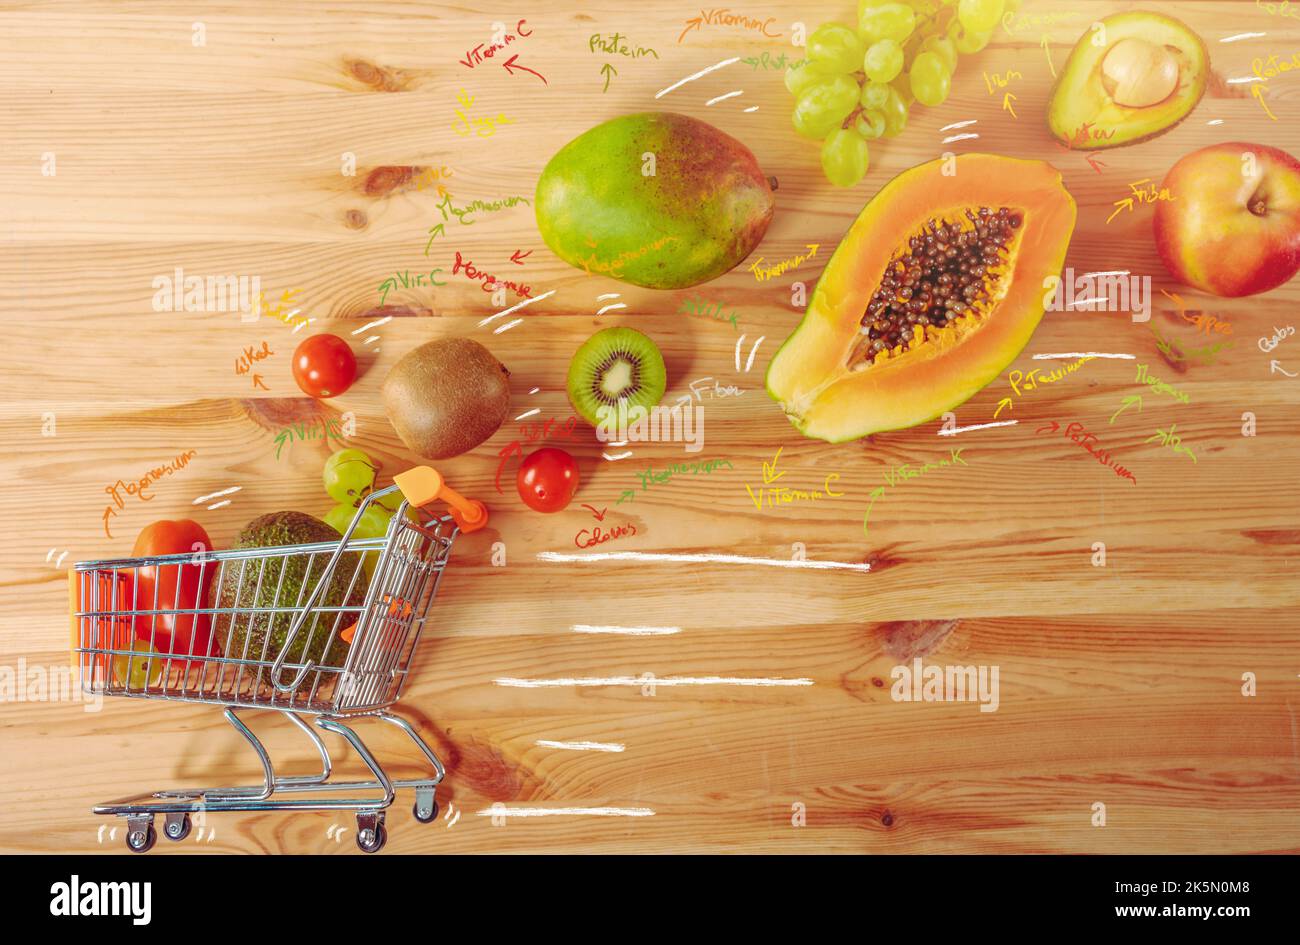 Einkaufswagen mit frischem Obst, fertig zum Anliefern Stockfoto